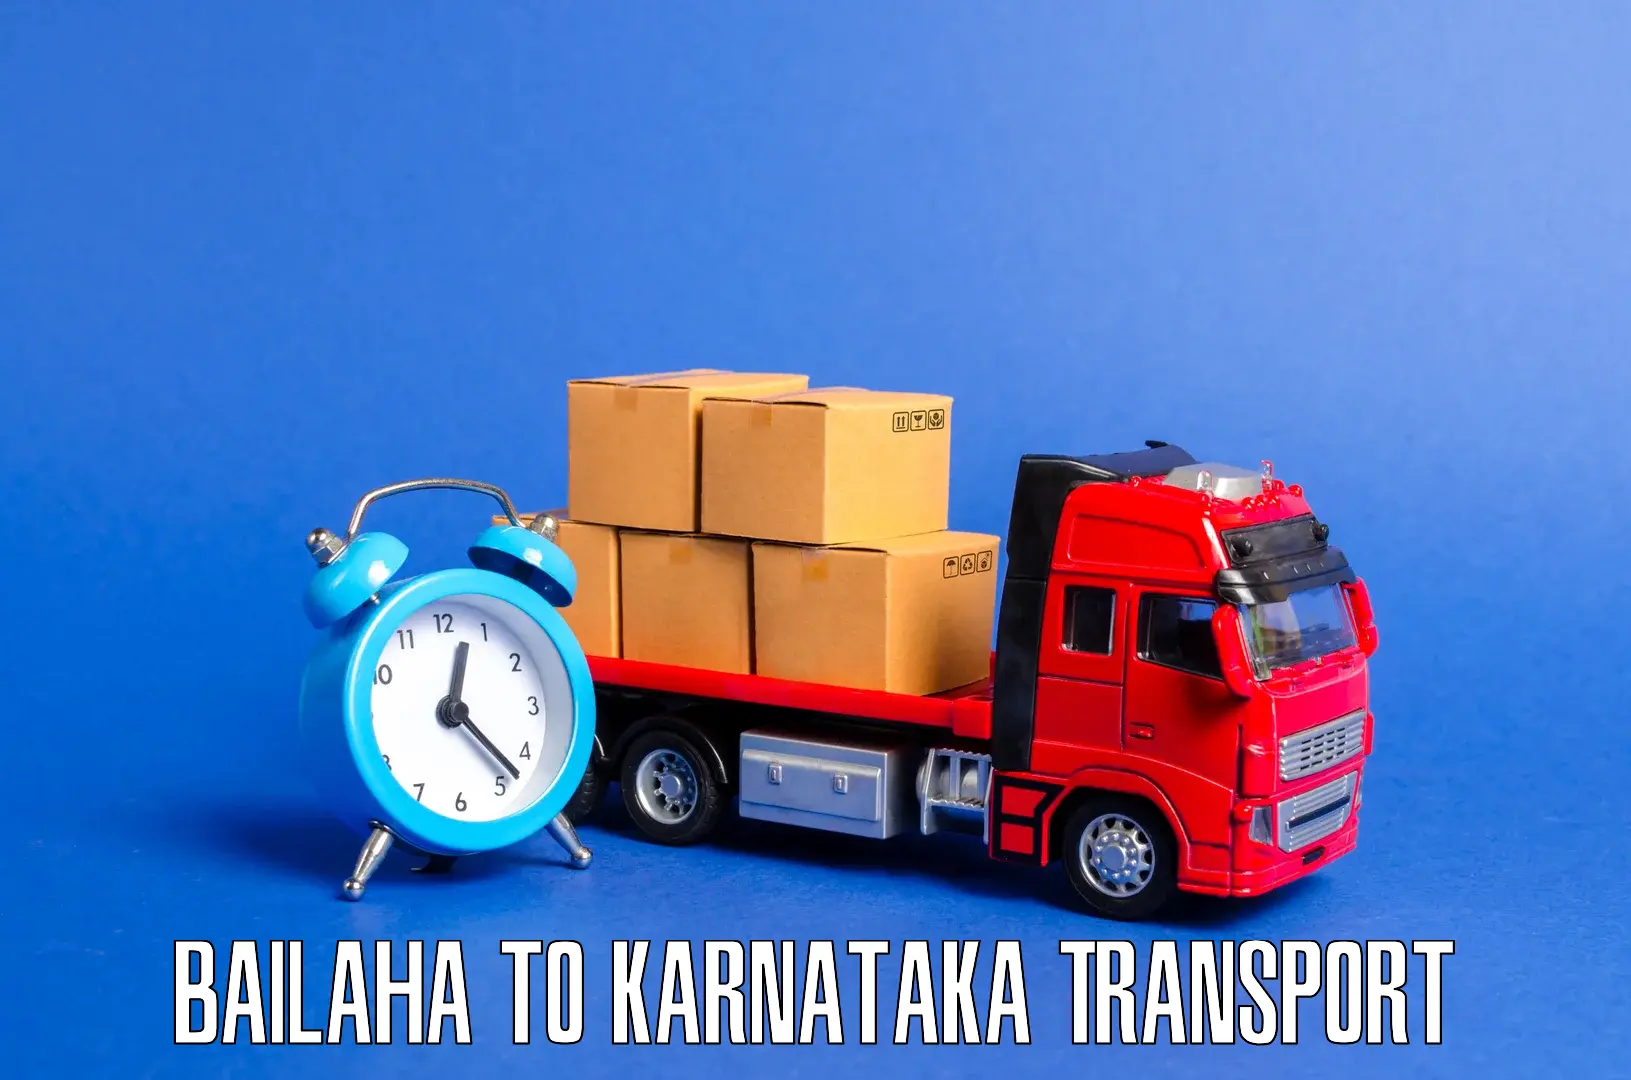 Intercity transport Bailaha to Chitradurga